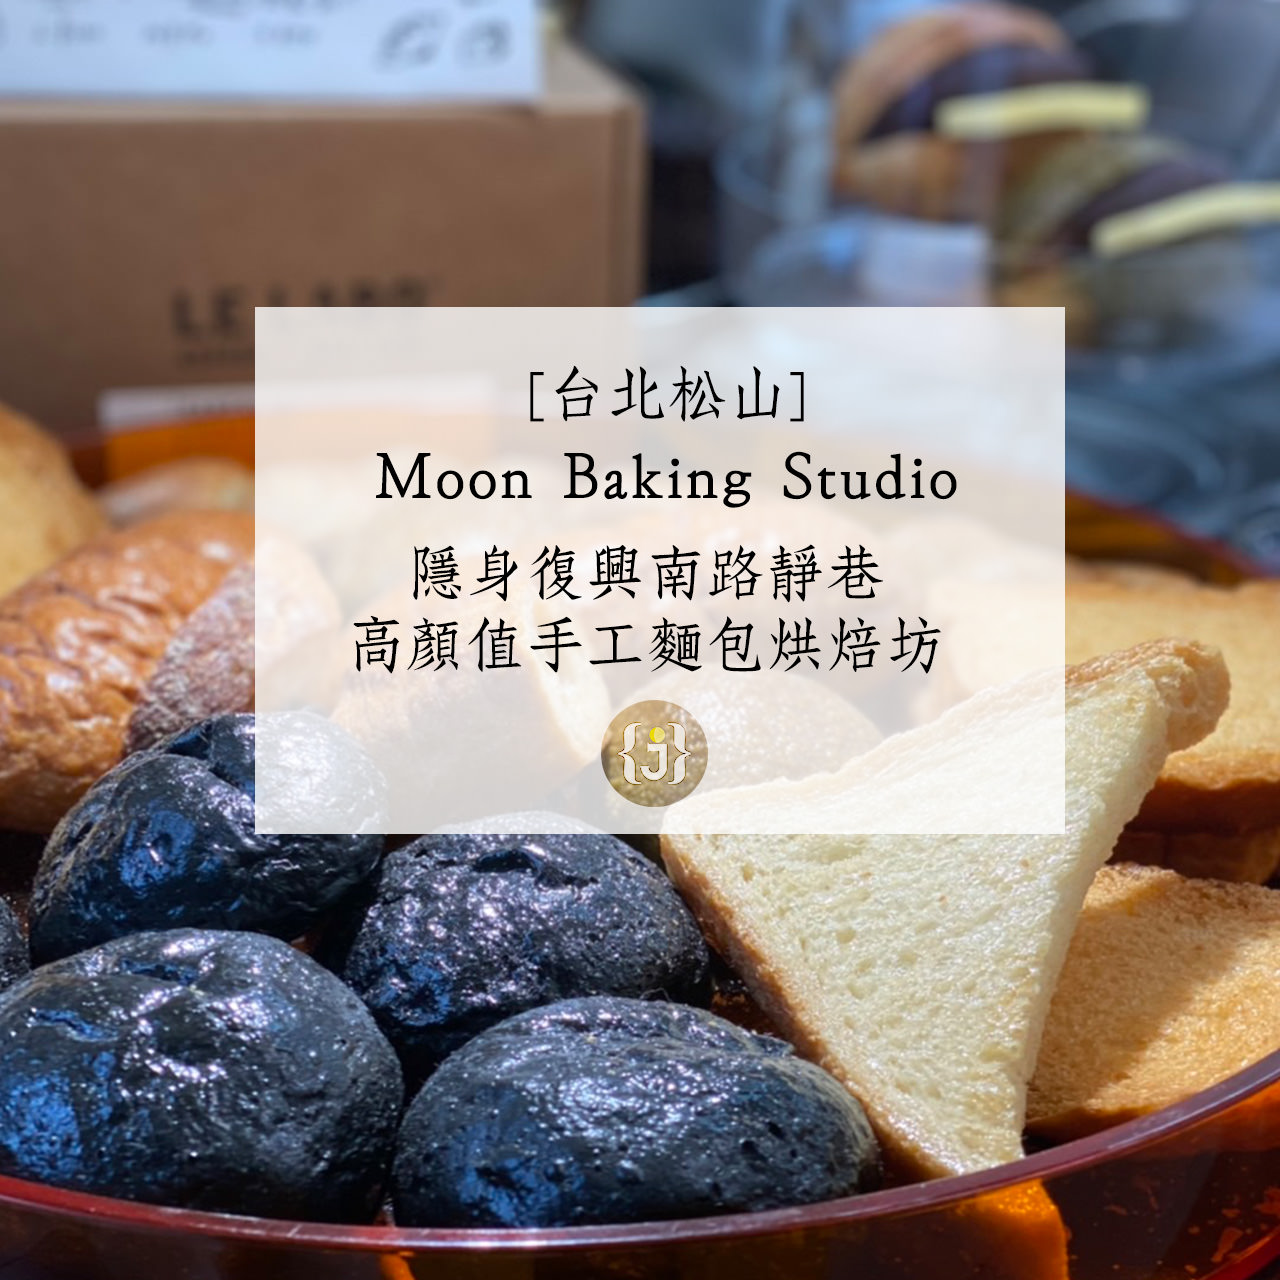 【台北大安】Moon Baking Studio 隱身復興南路靜巷 高顏值手工麵包烘焙坊